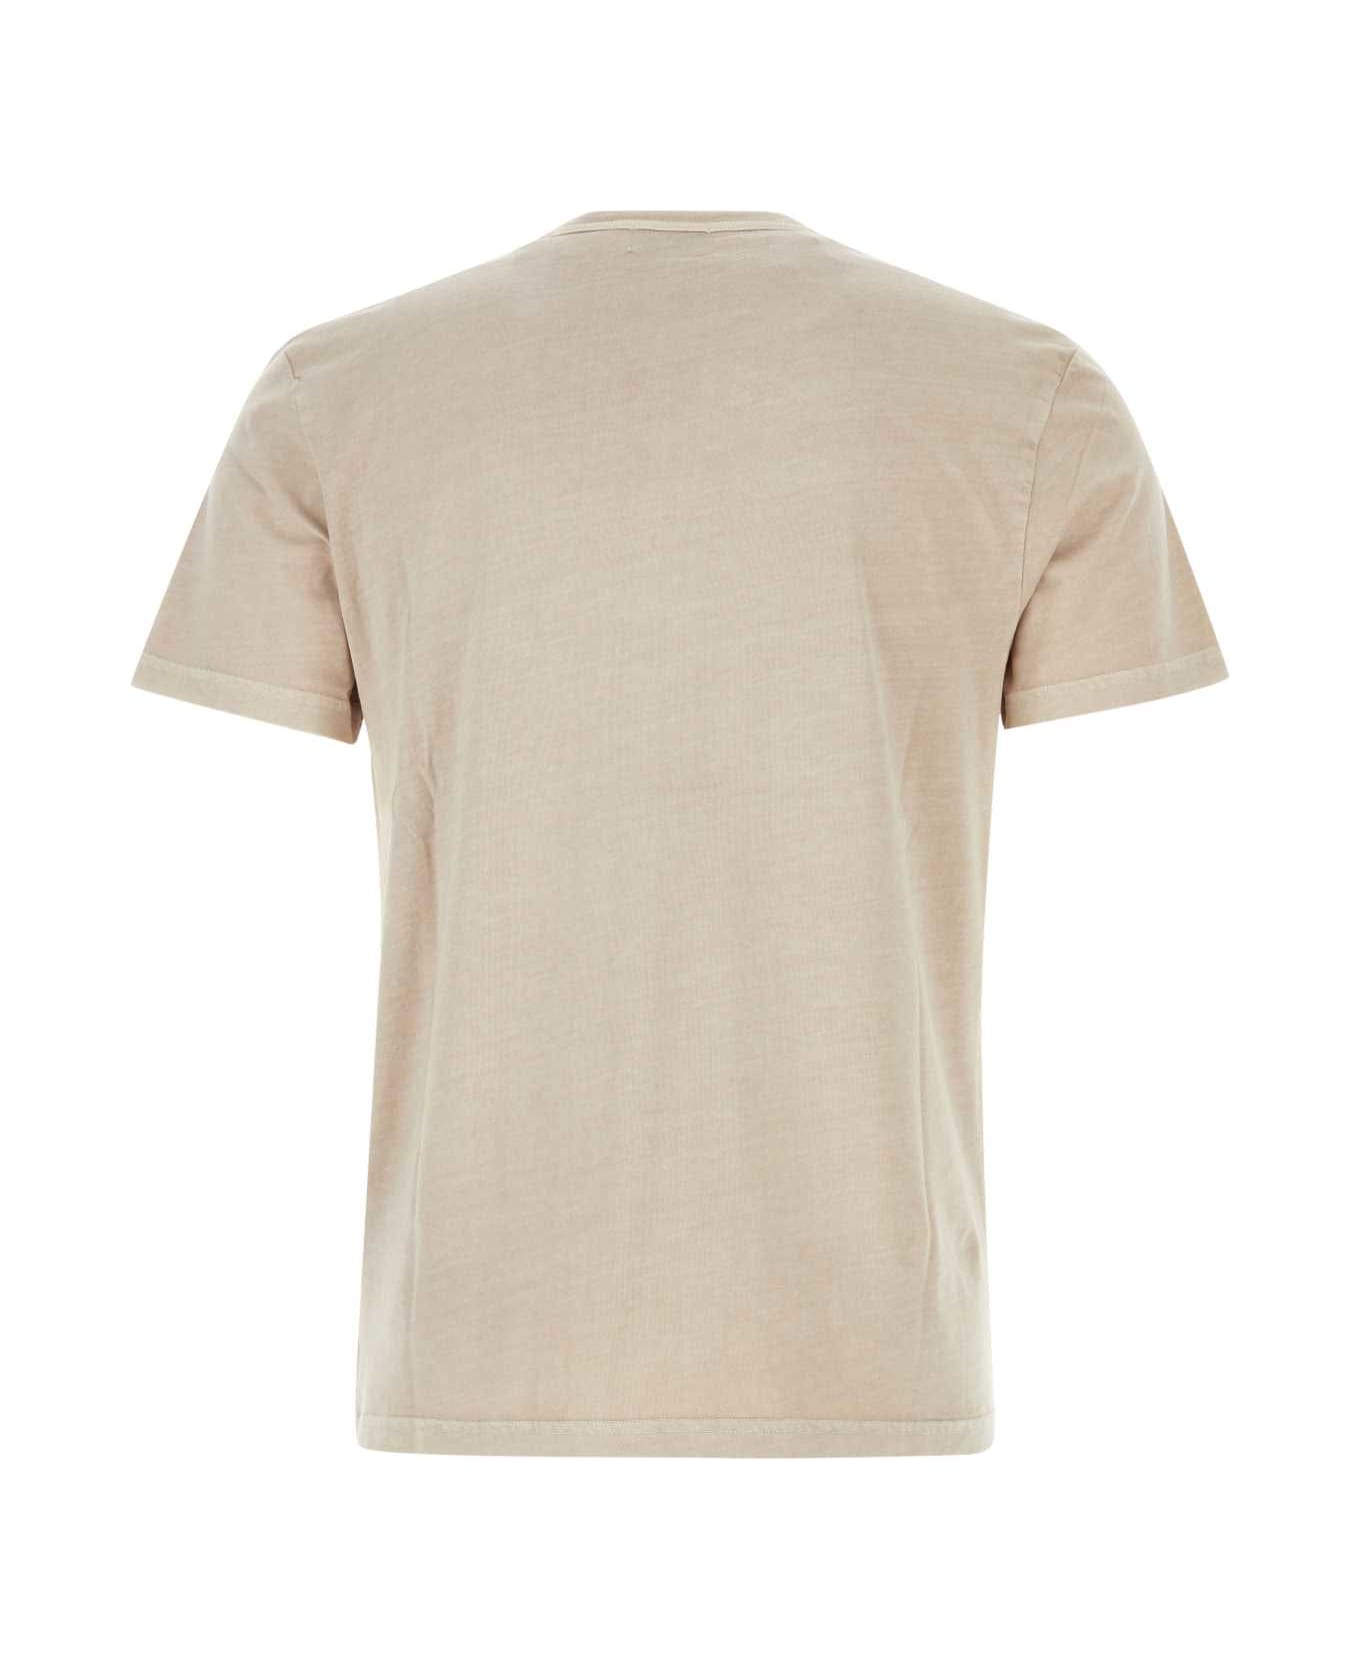 Woolrich Melange Cappuccino Cotton T-shirt - 8072